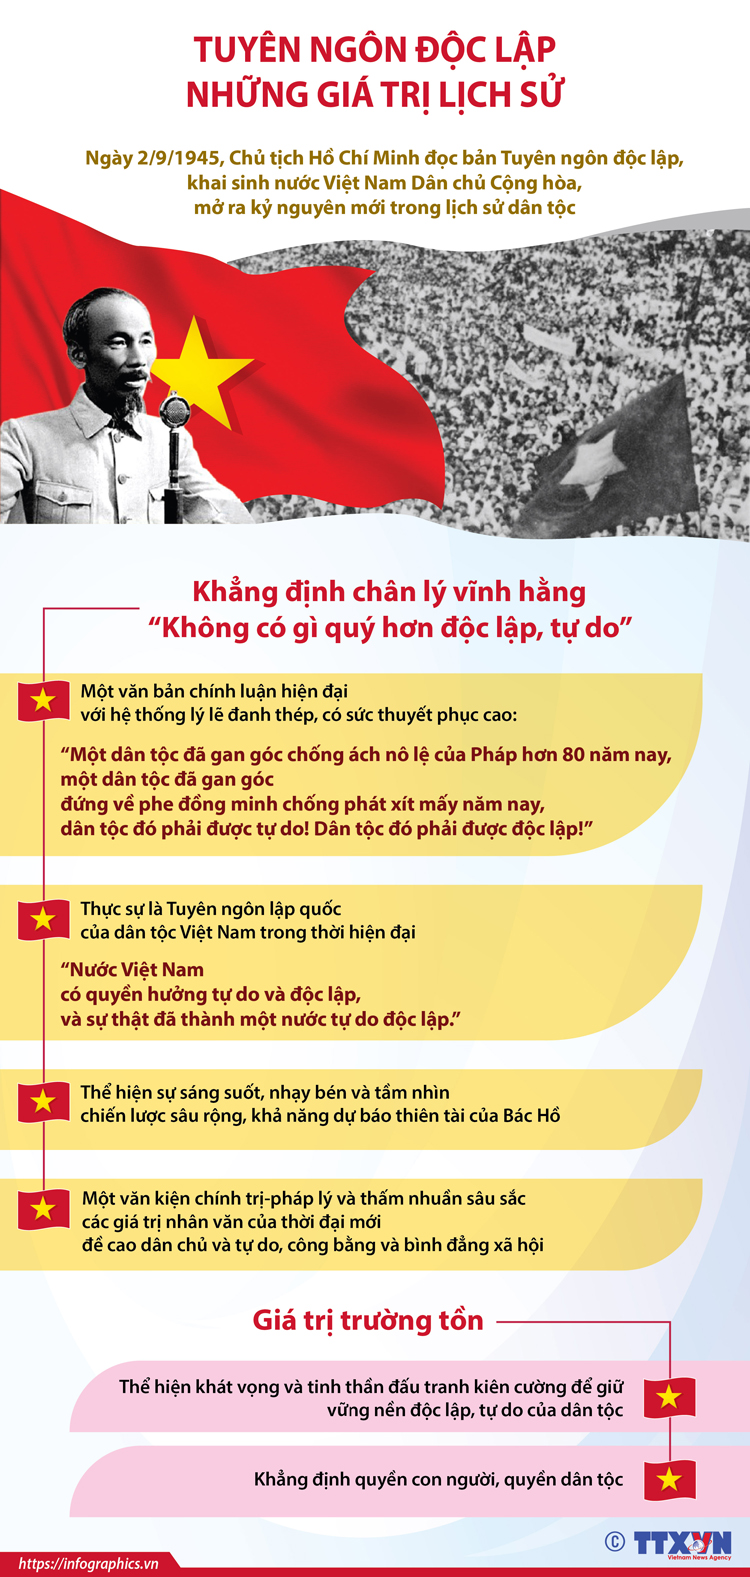 Đến với hình ảnh Tuyên ngôn Độc lập, chúng ta sẽ cảm nhận được sự trân trọng và tôn vinh tầm vóc lịch sử của đất nước và của nhân dân Việt Nam. Tuyên ngôn này không chỉ đánh dấu bước ngoặt lịch sử, mà còn là niềm tự hào về sự độc lập và tự do của tổ quốc!